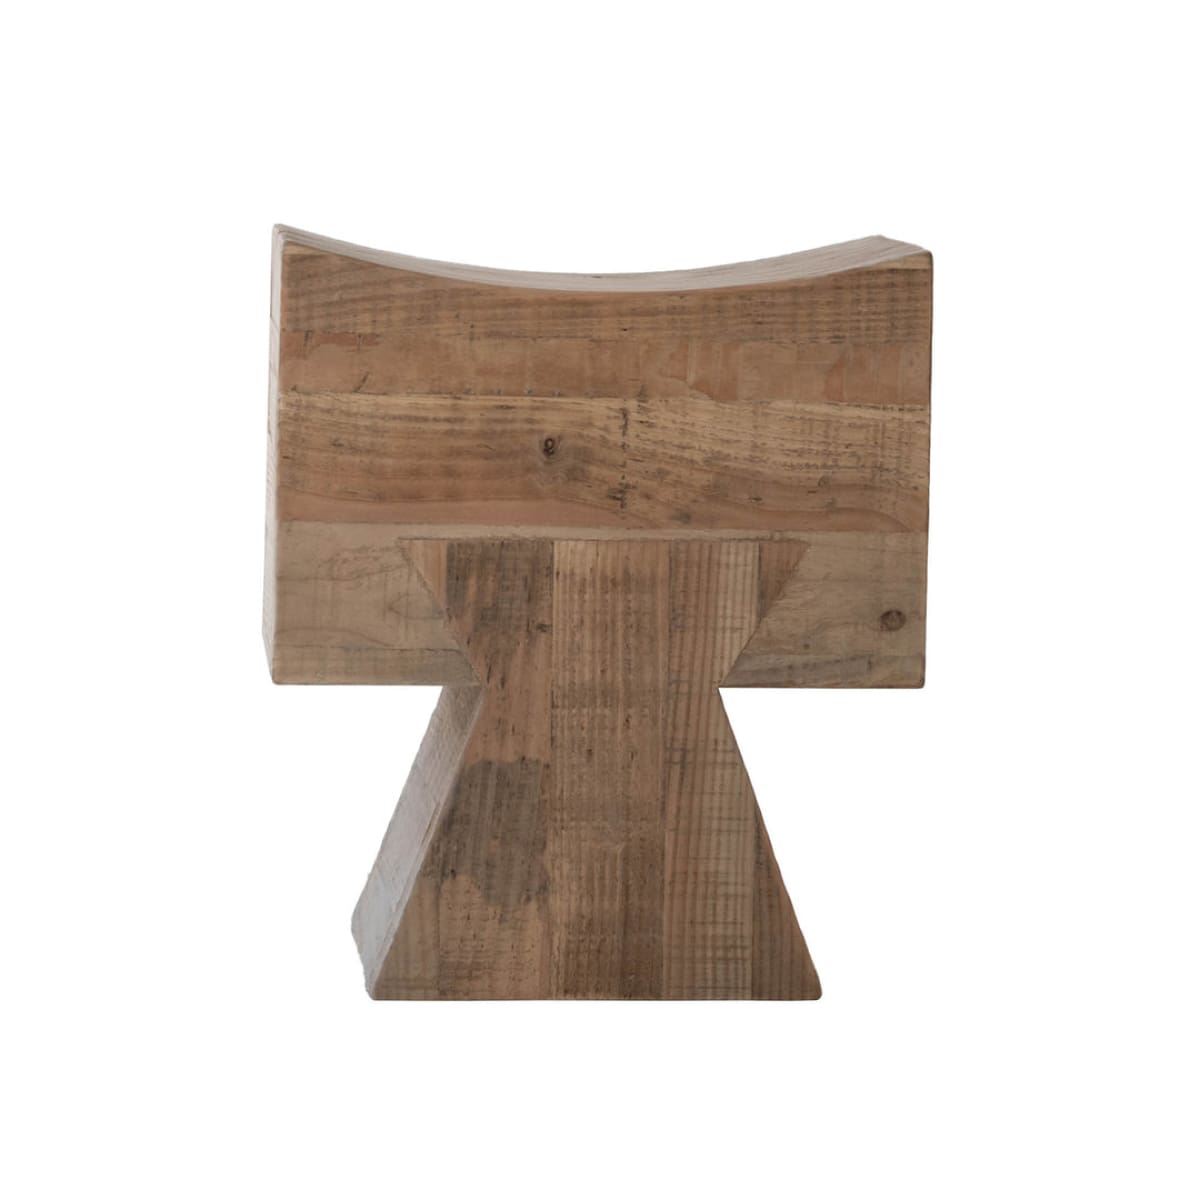 Pieta Stool - lh-import-stools